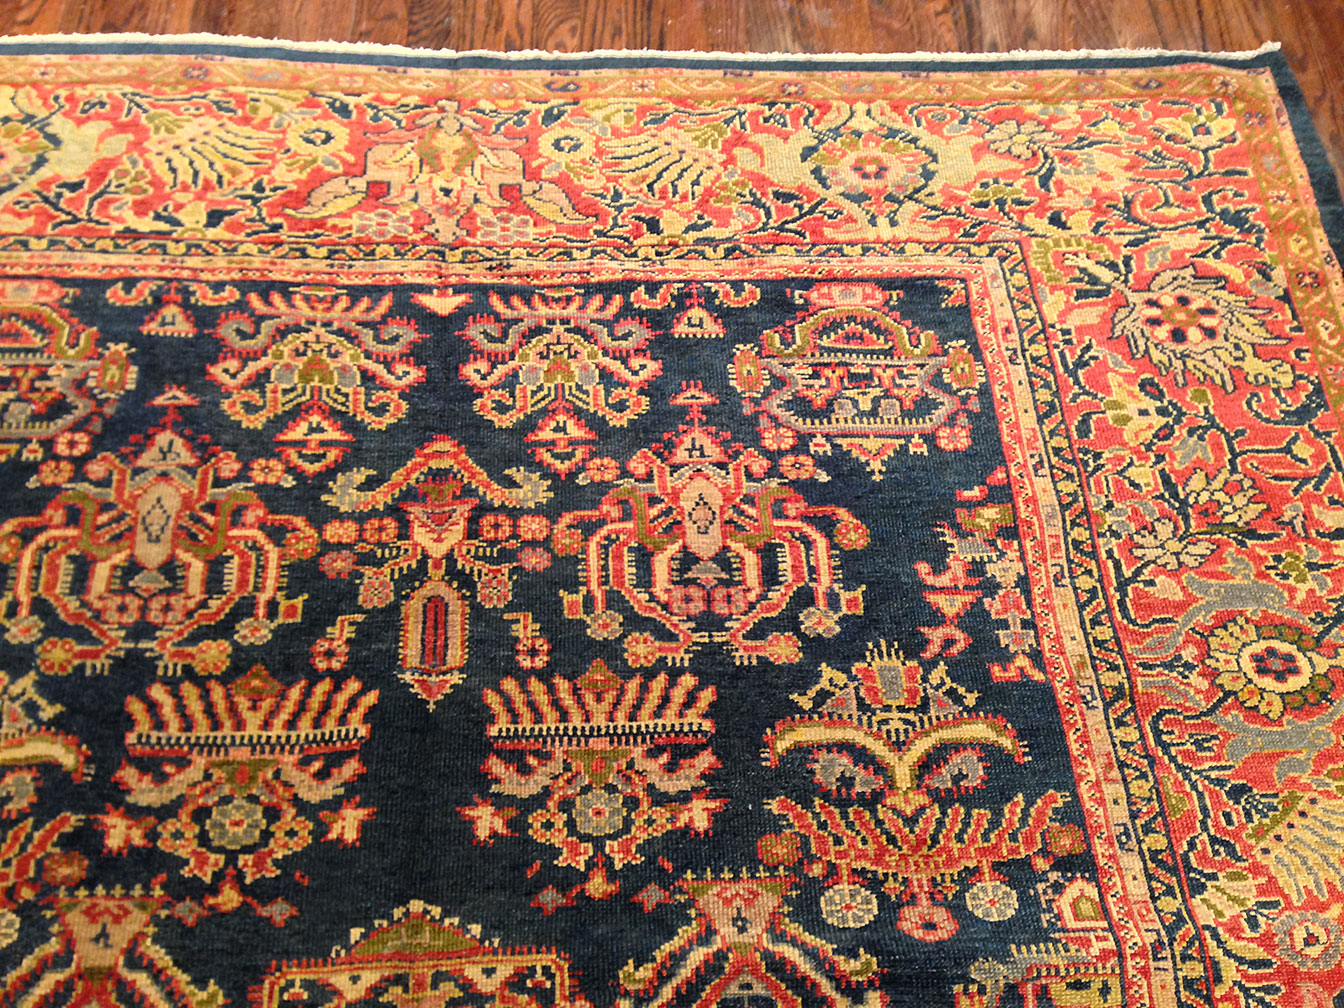 Antique sultan abad Carpet - # 9097